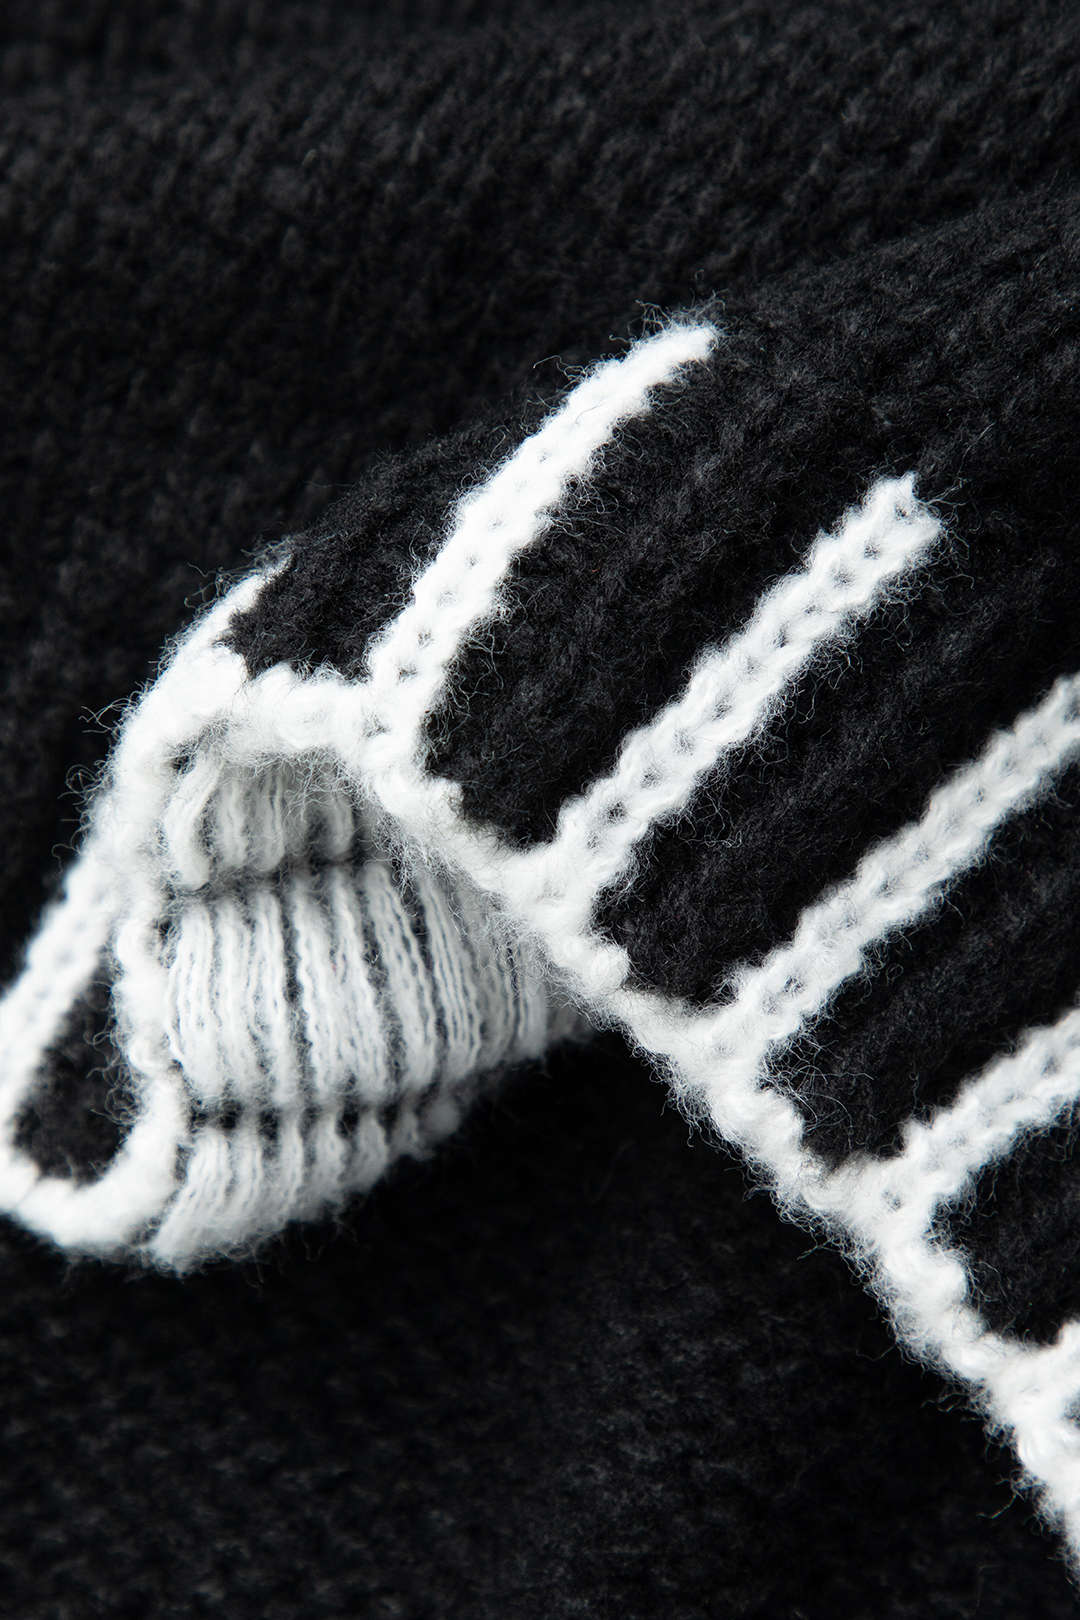 Contrast Trim Turtleneck Sweater